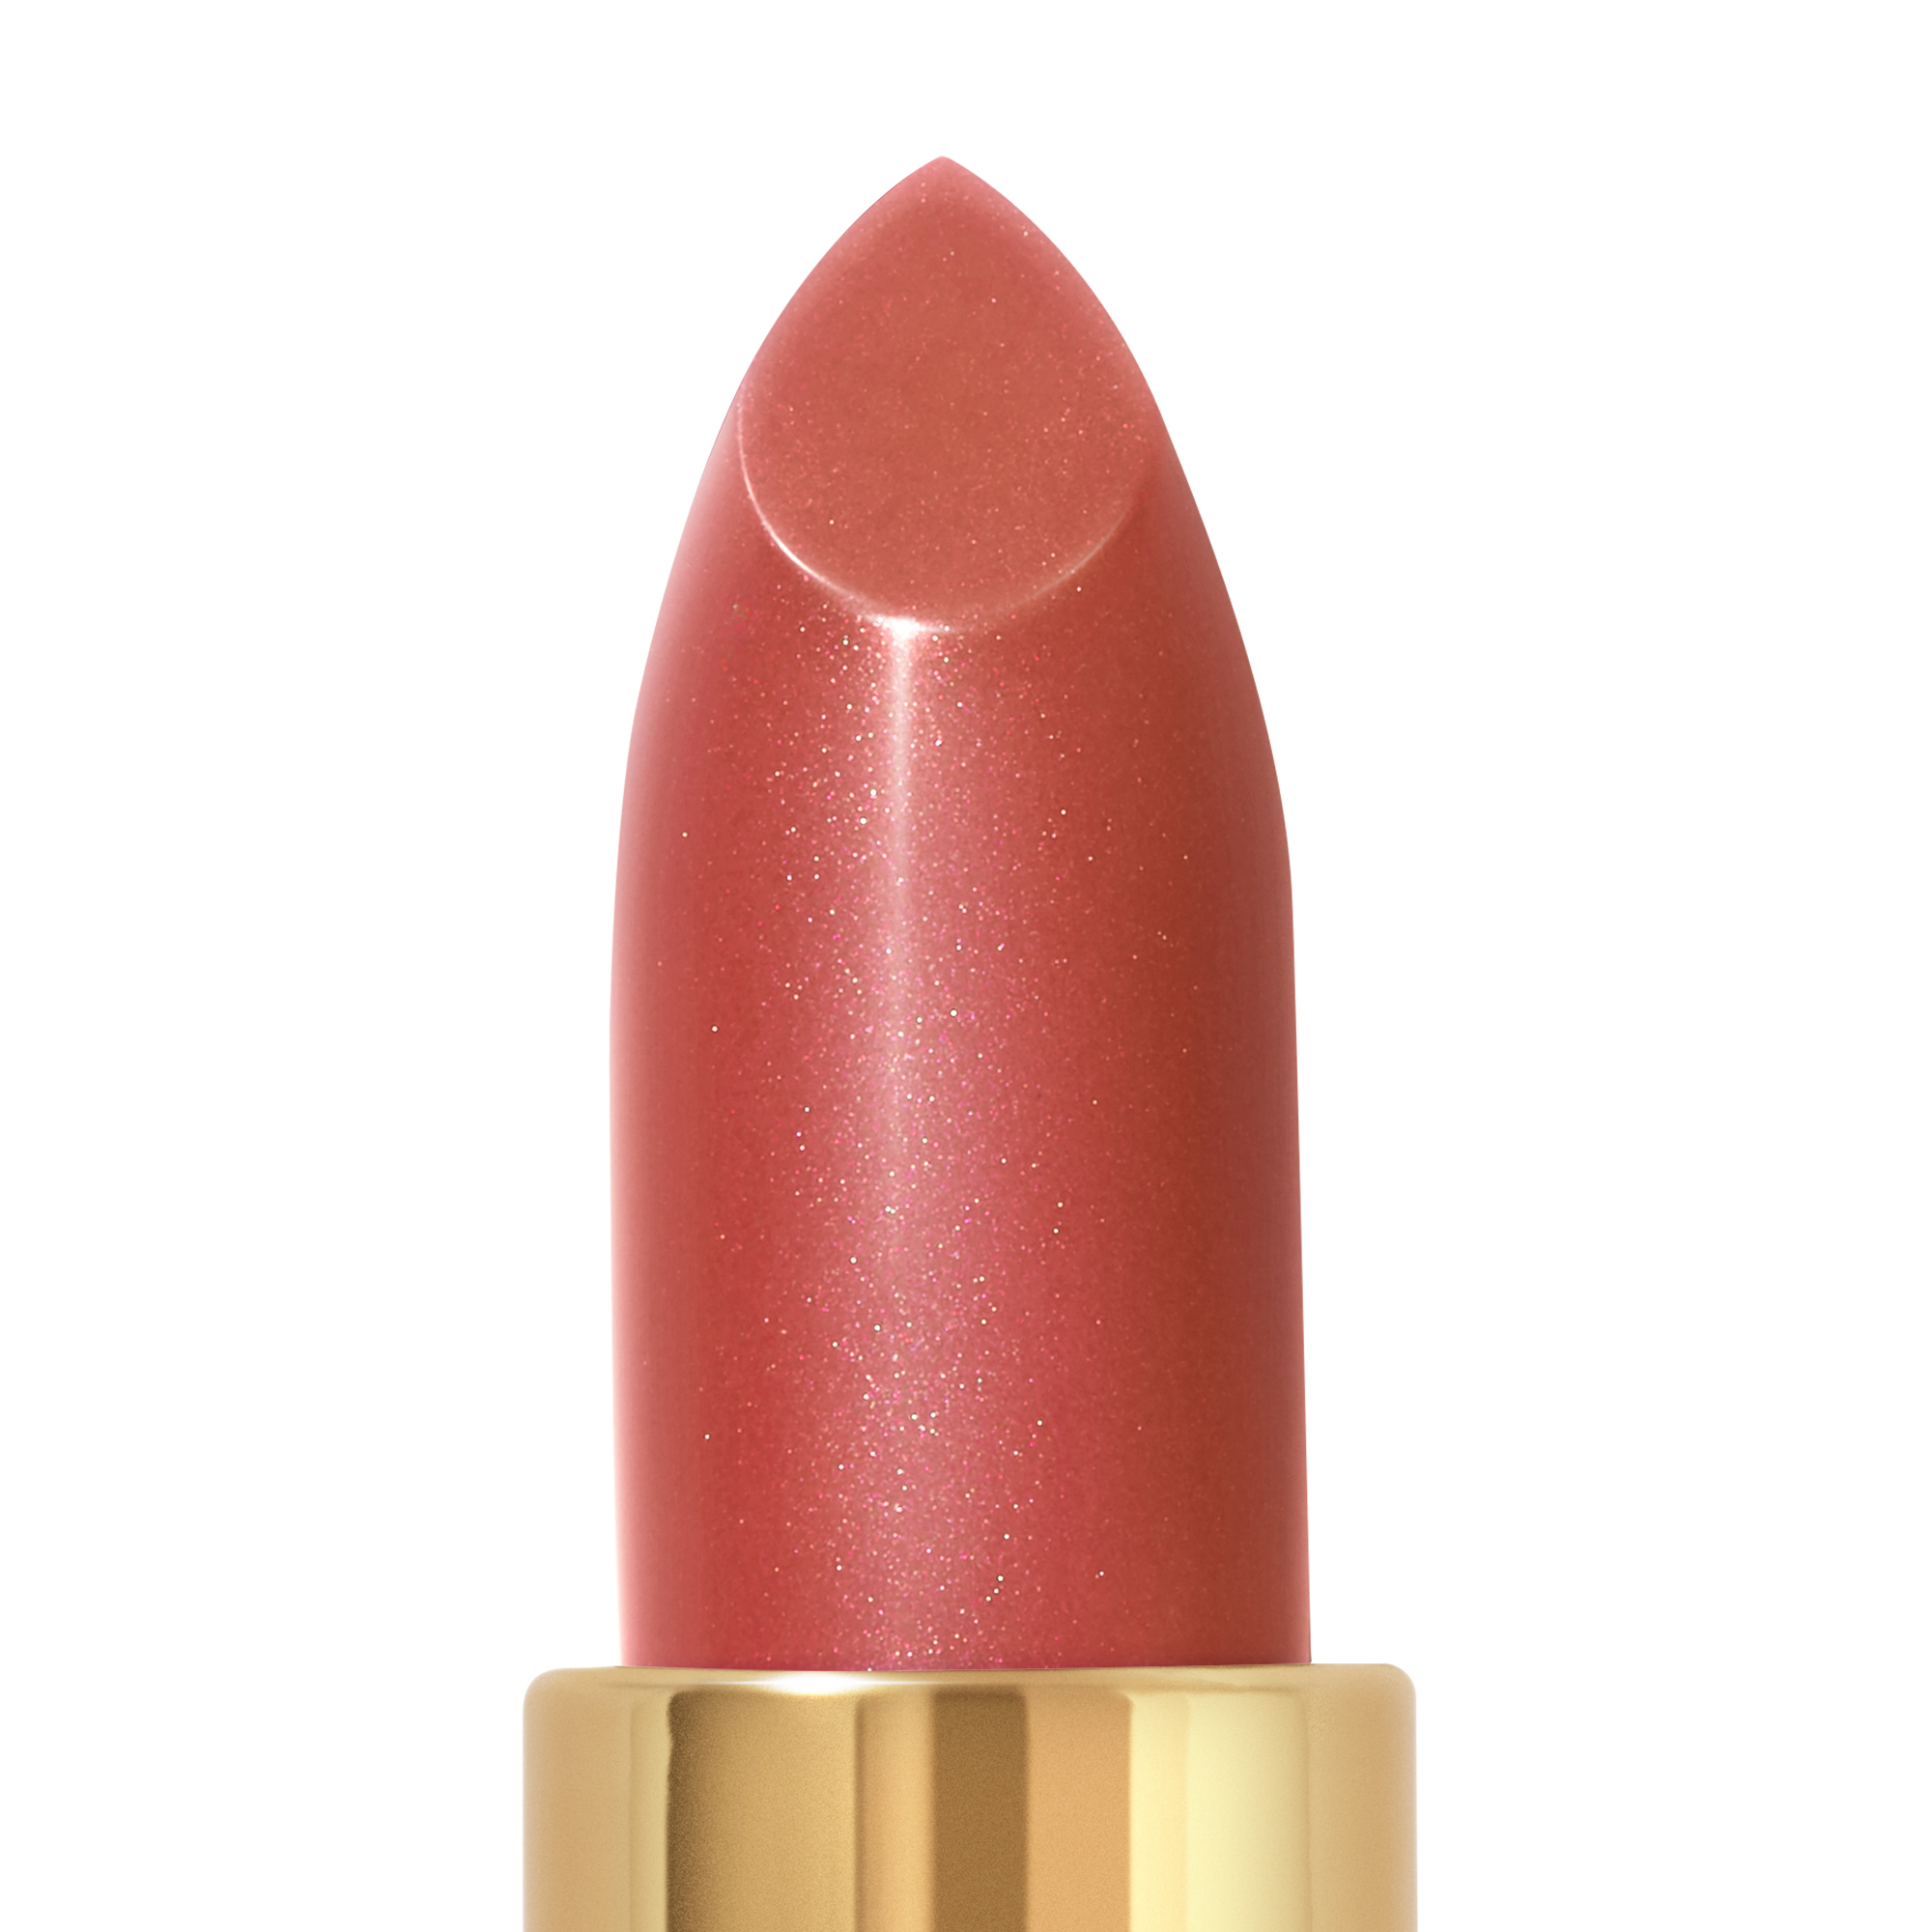 Revlon Super Lustrous Lipstick, Peach Parfait - image 4 of 7